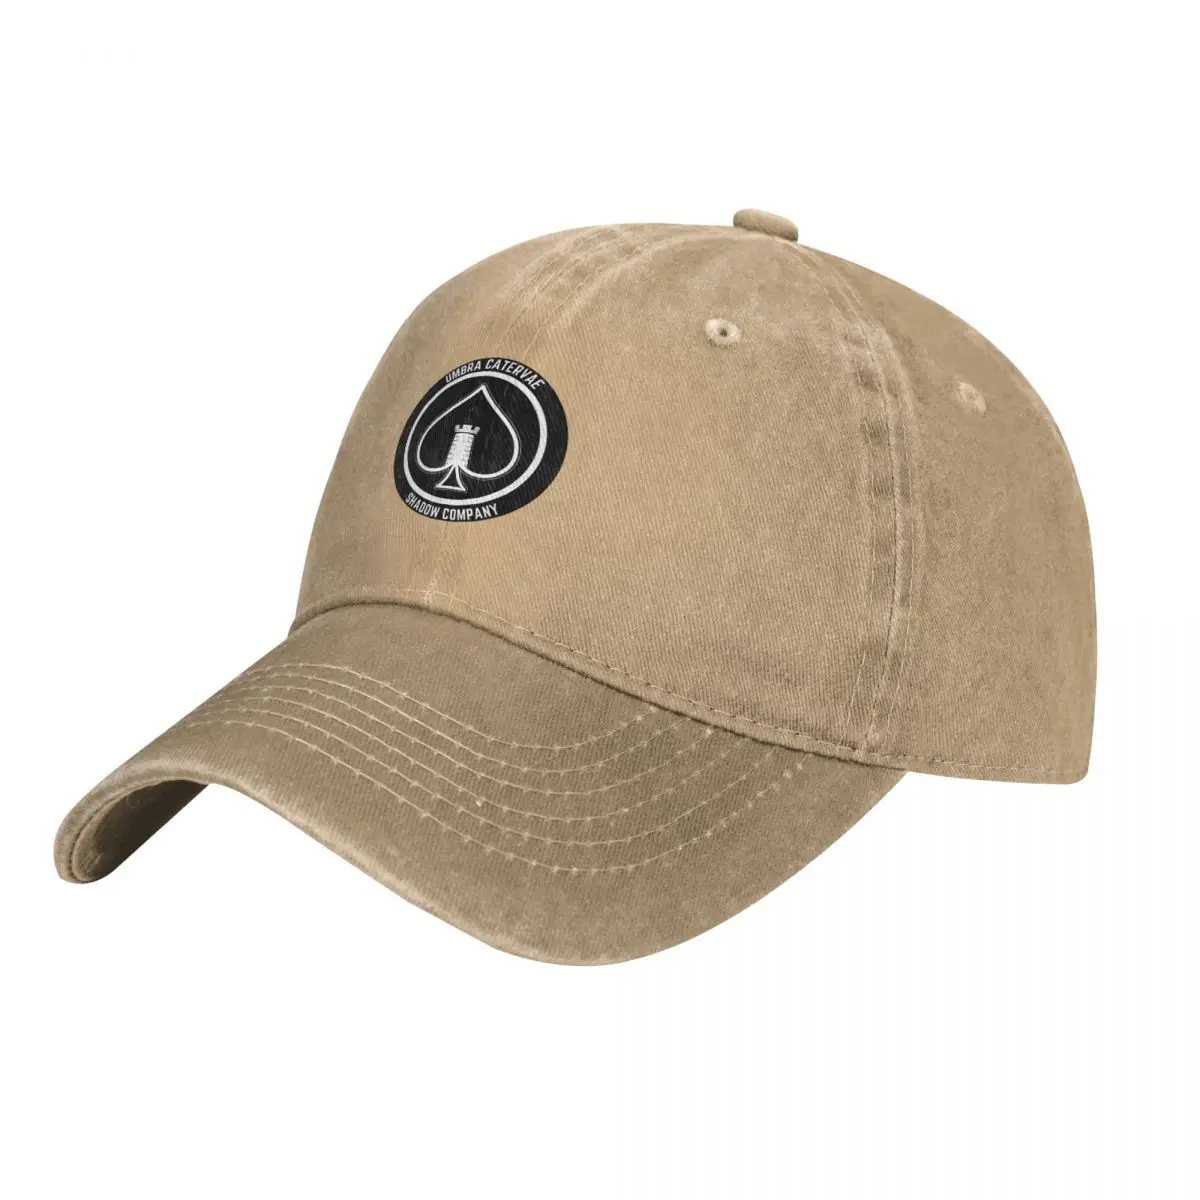 Shadow Company Emblem Cap Cowboy Hat bucket hat Sun cap military tactica... - £17.42 GBP